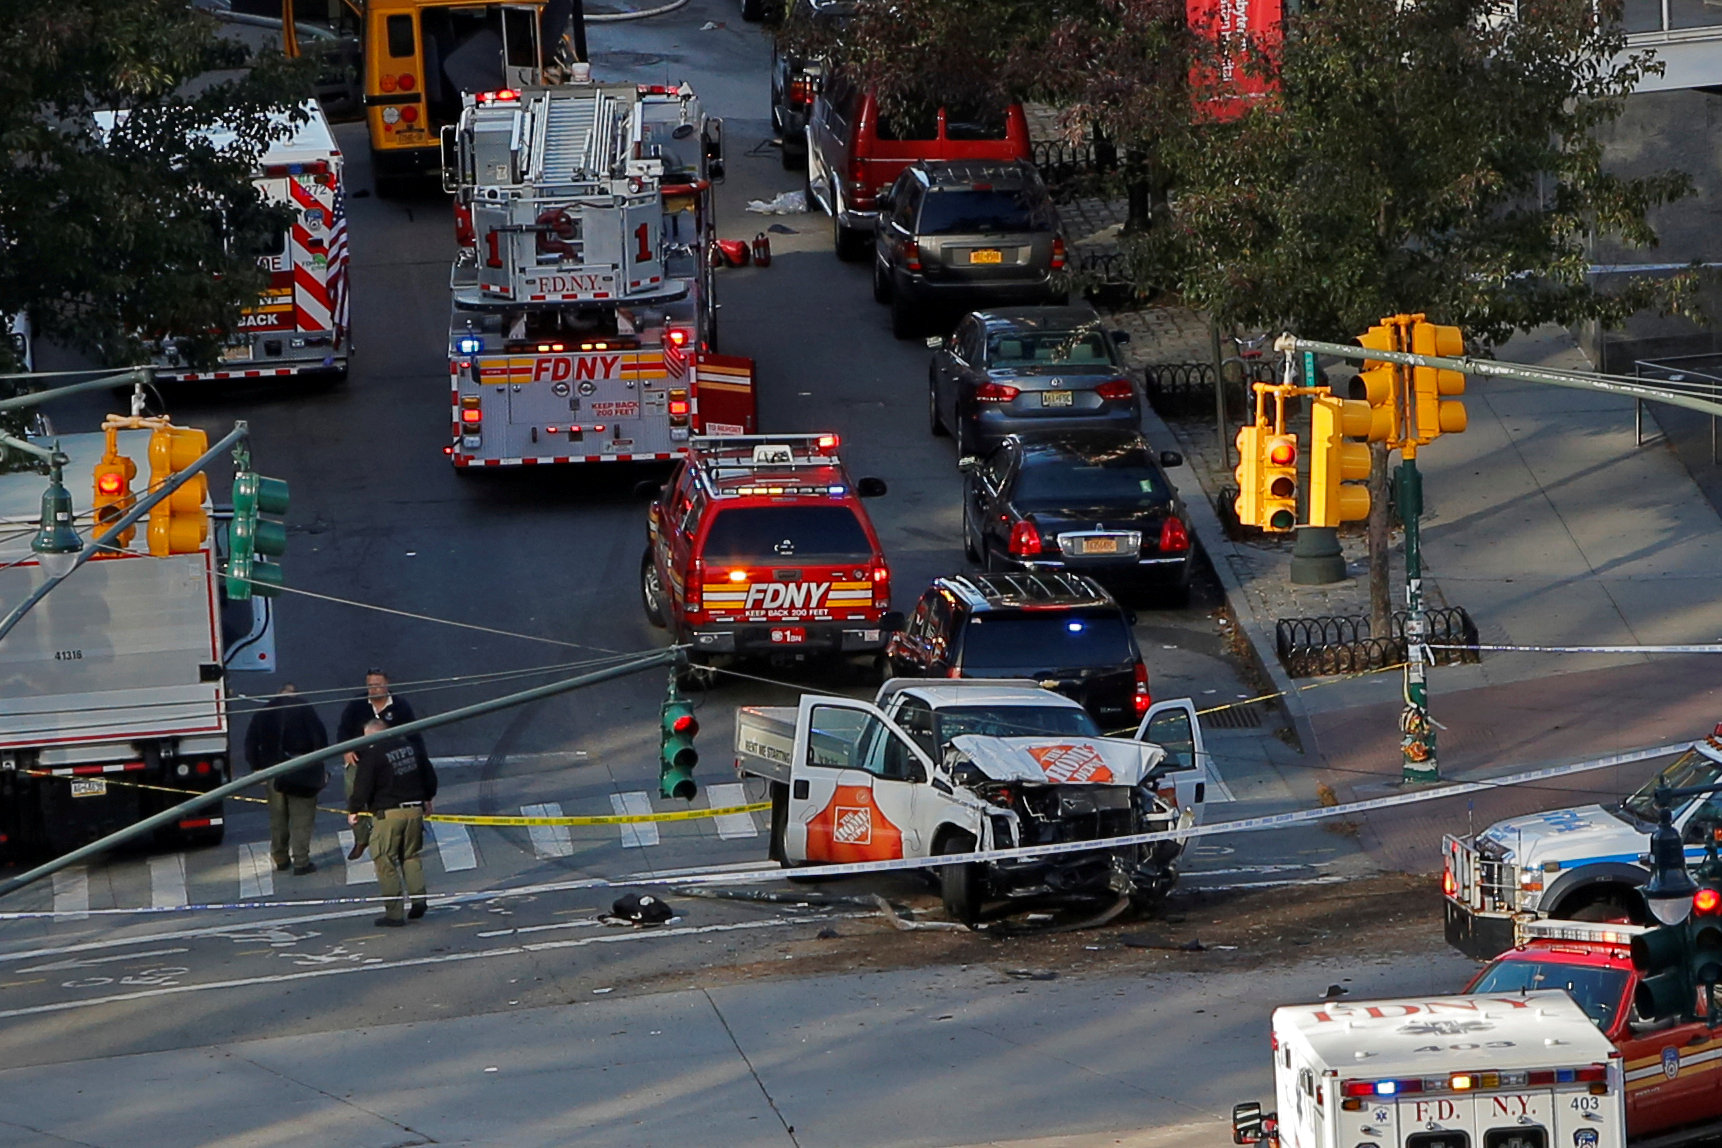 Suman 8 muertos ataque terrorista ciudad Nueva York